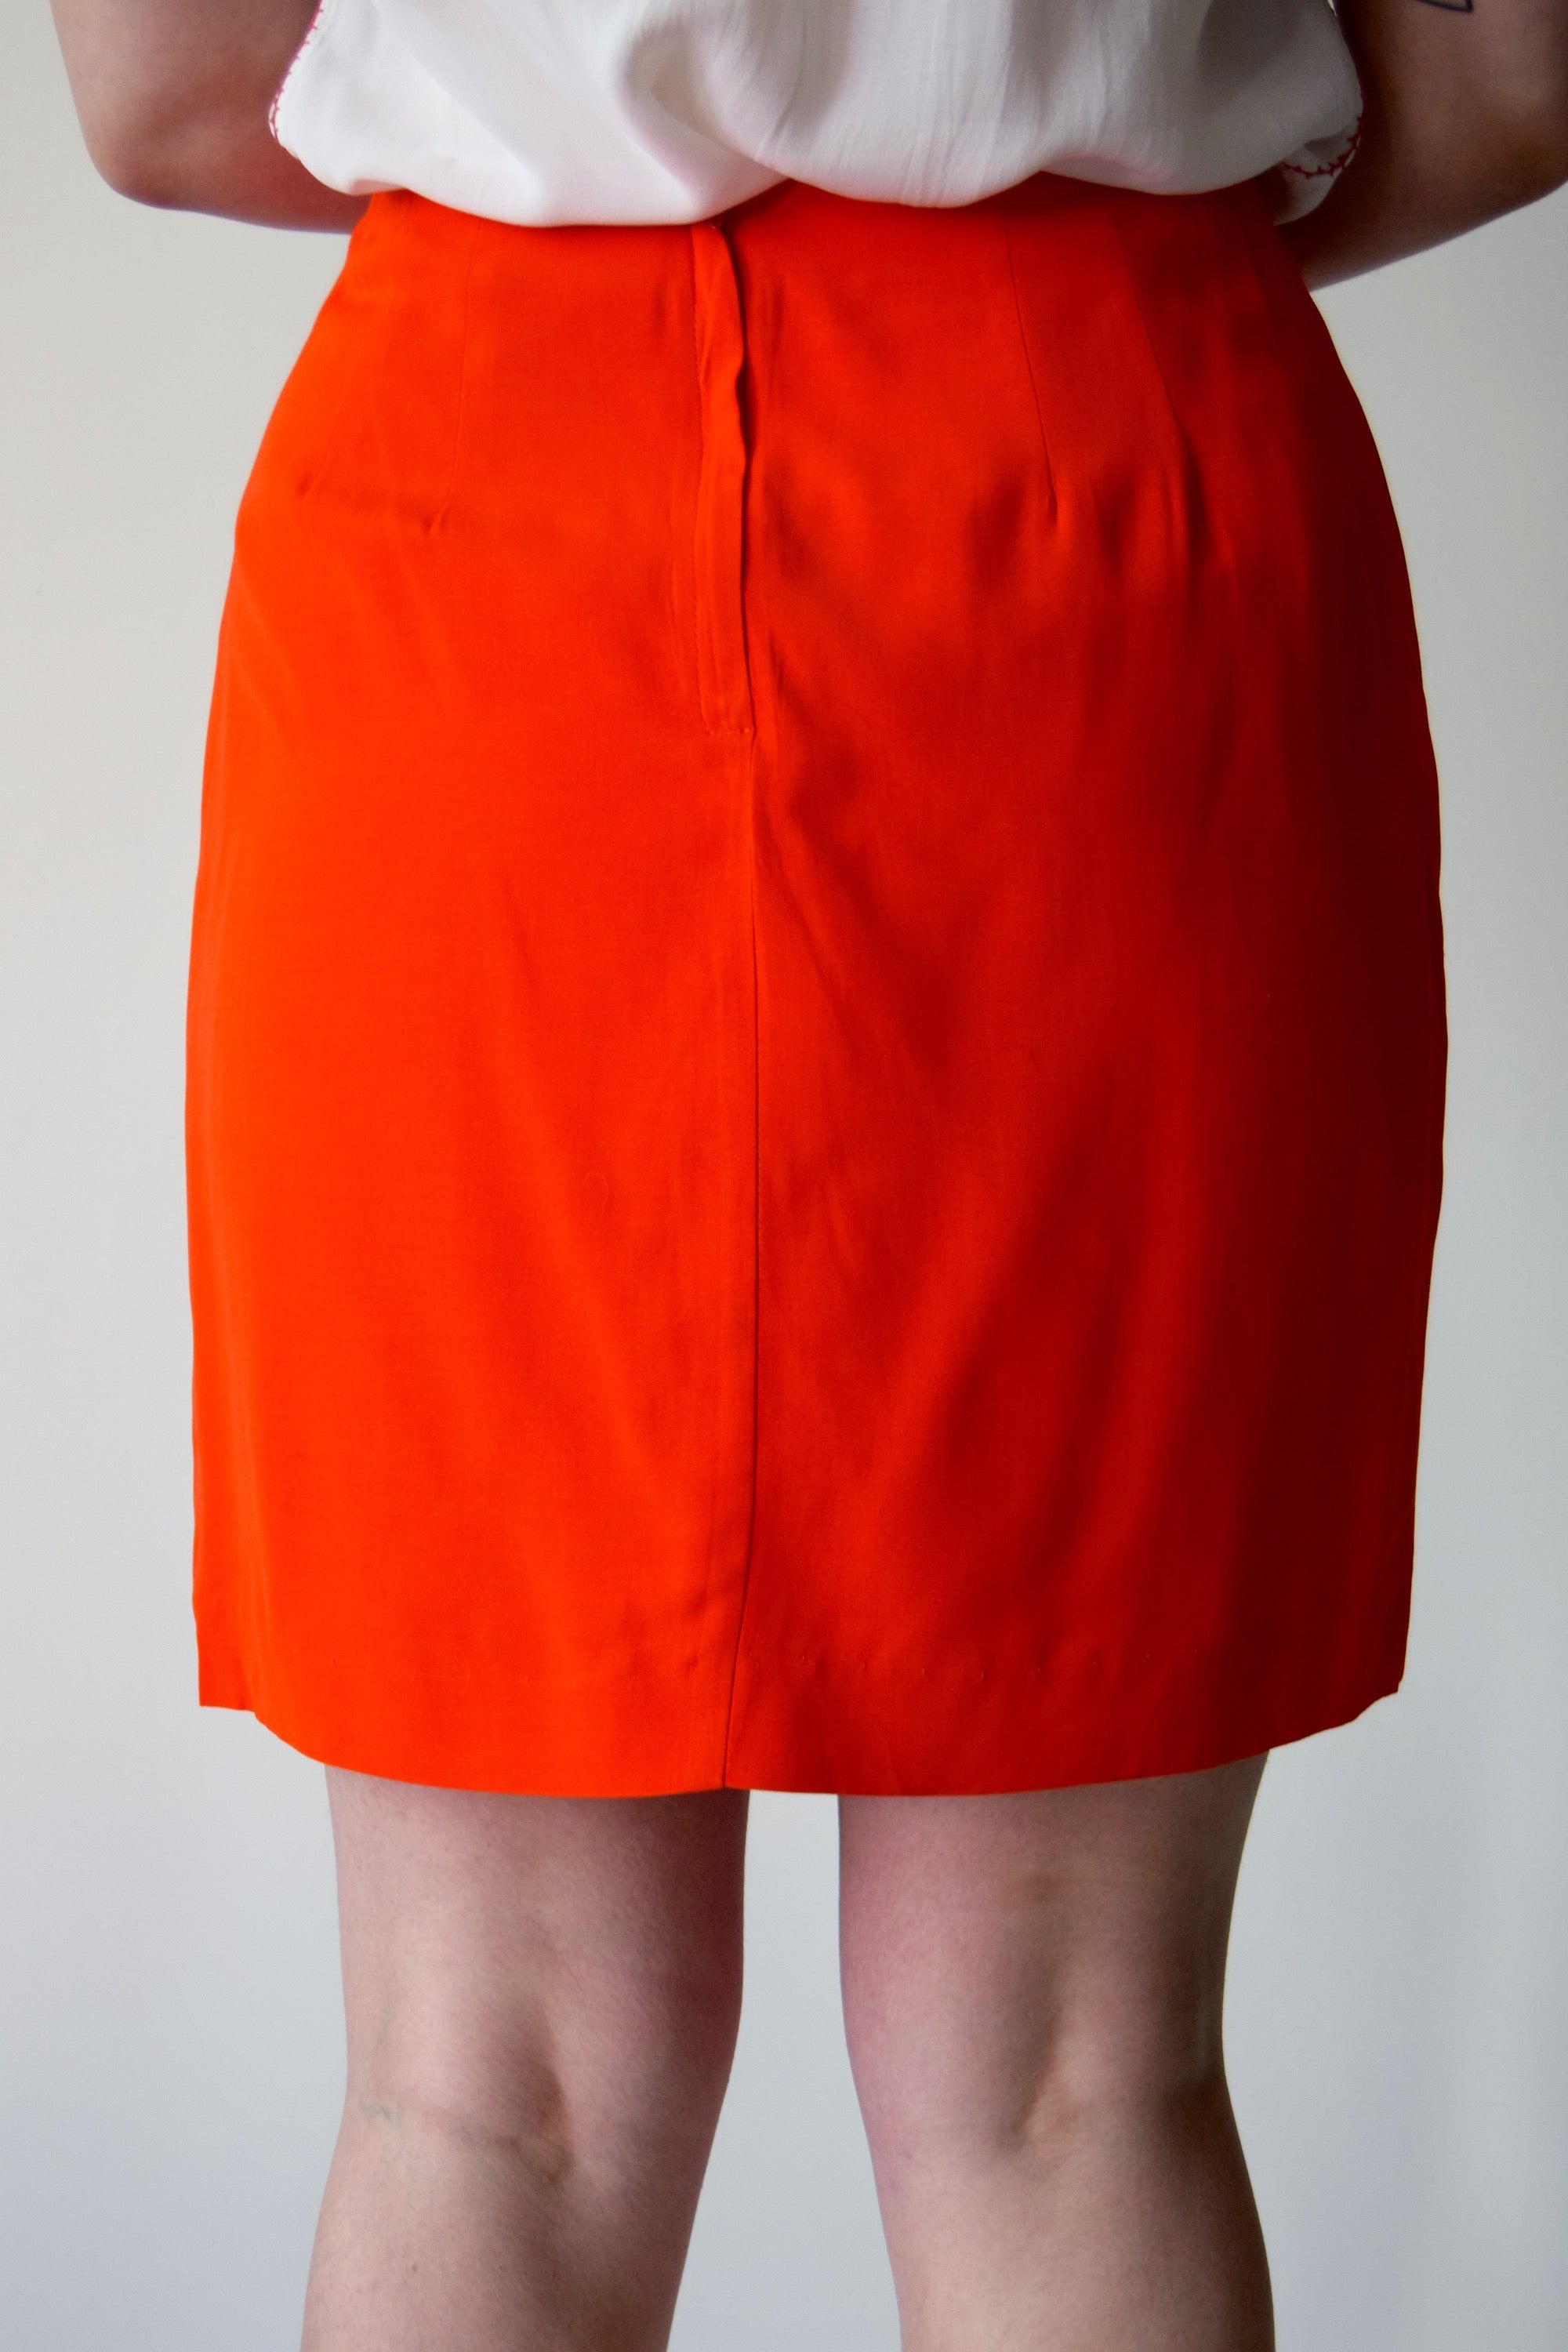 Vintage Orange Mini Skirrrt